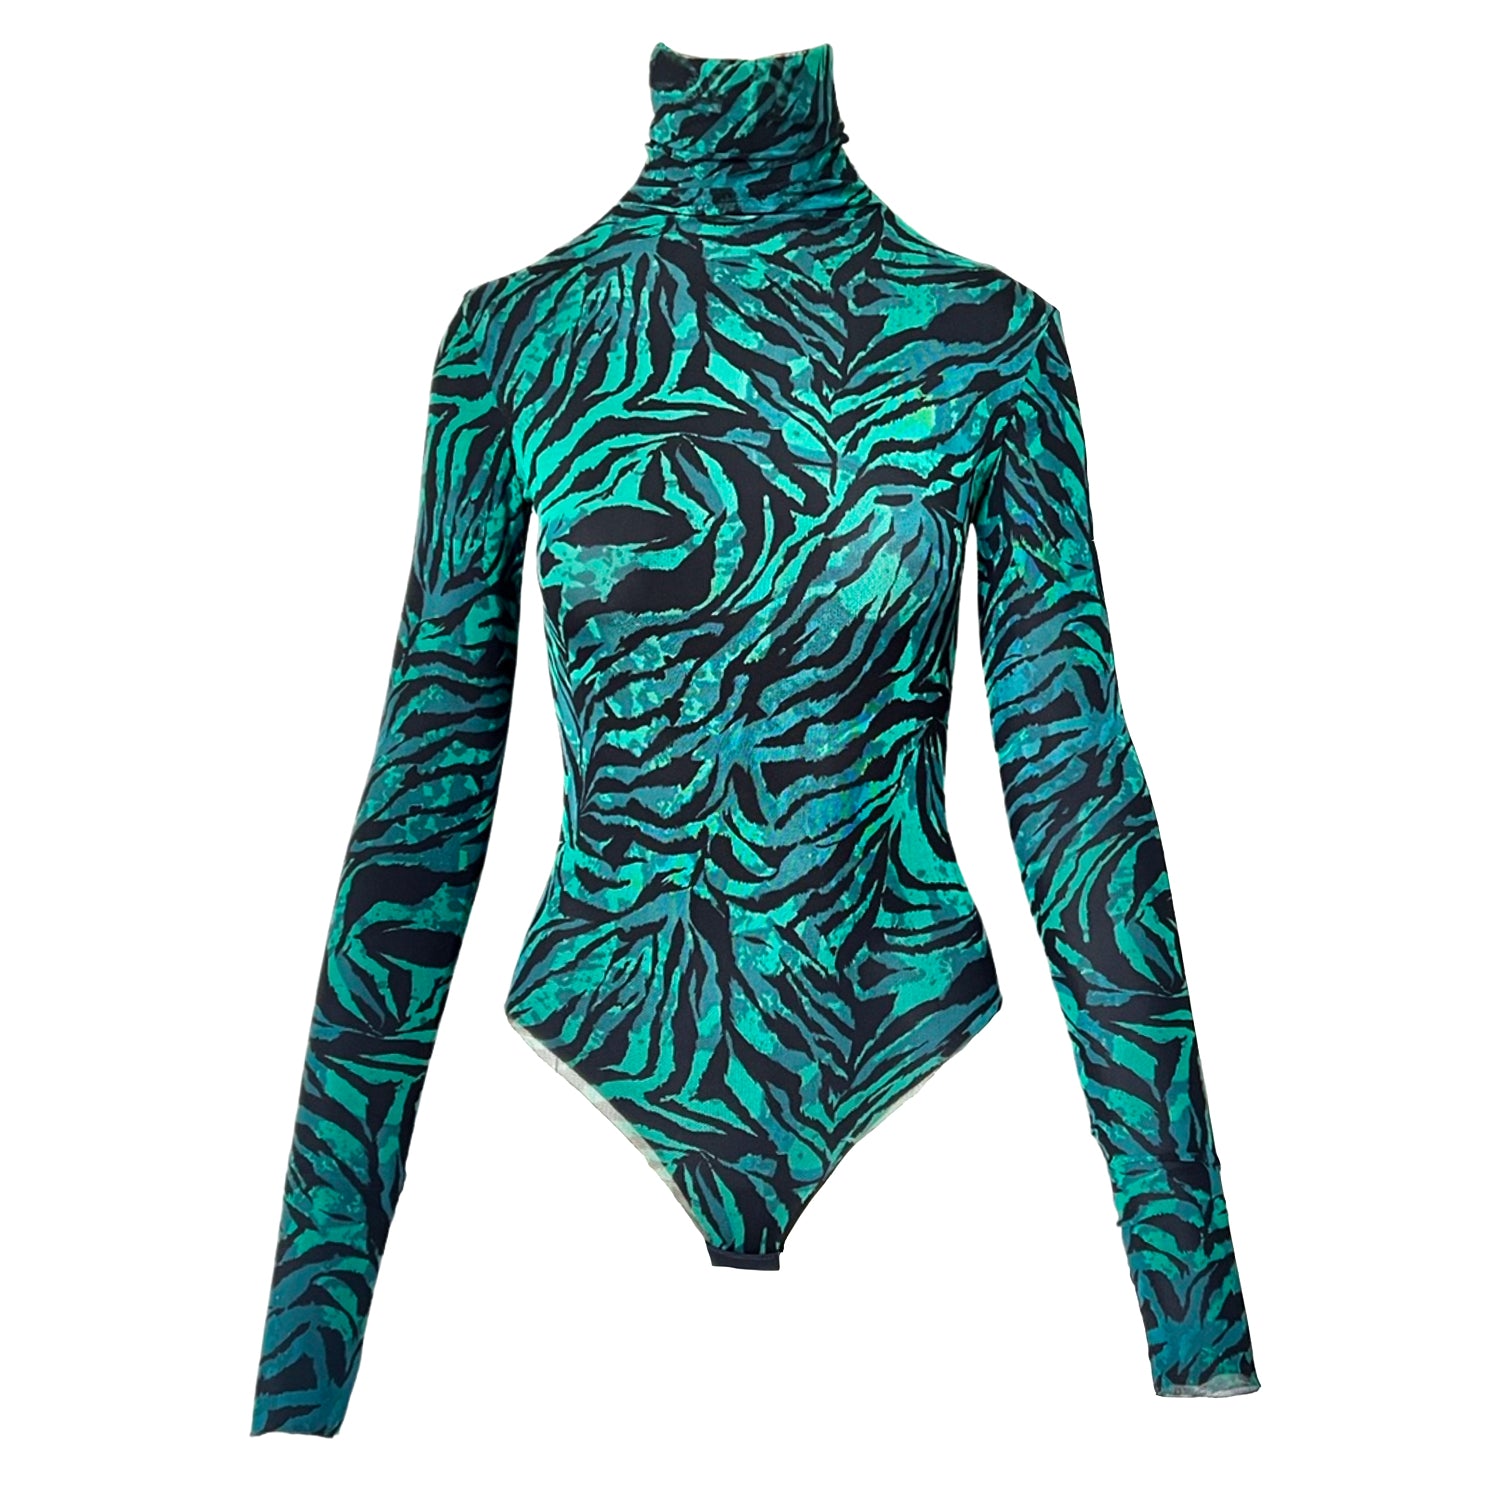 Printed Mesh Bodysuit in Black & Green